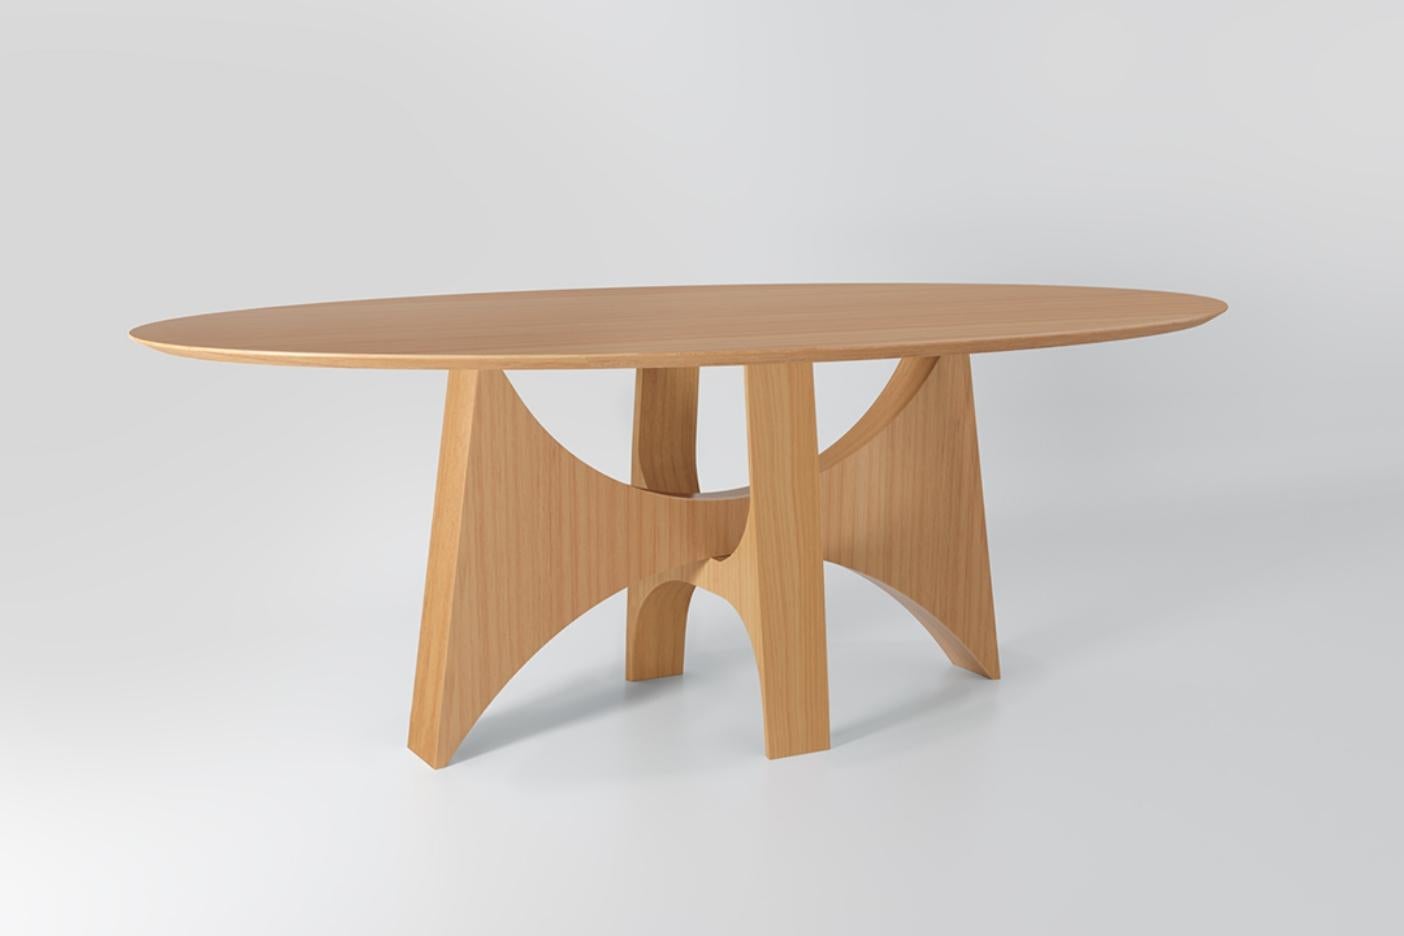 La table à manger ovale Planalto a été inspirée par les courbes des œuvres du maître Oscar Niemeyer. Sa création évoque les constructions de l'architecte à Brasília, au Brésil, où l'élégance sculpturale de son design s'impose. Elle peut être